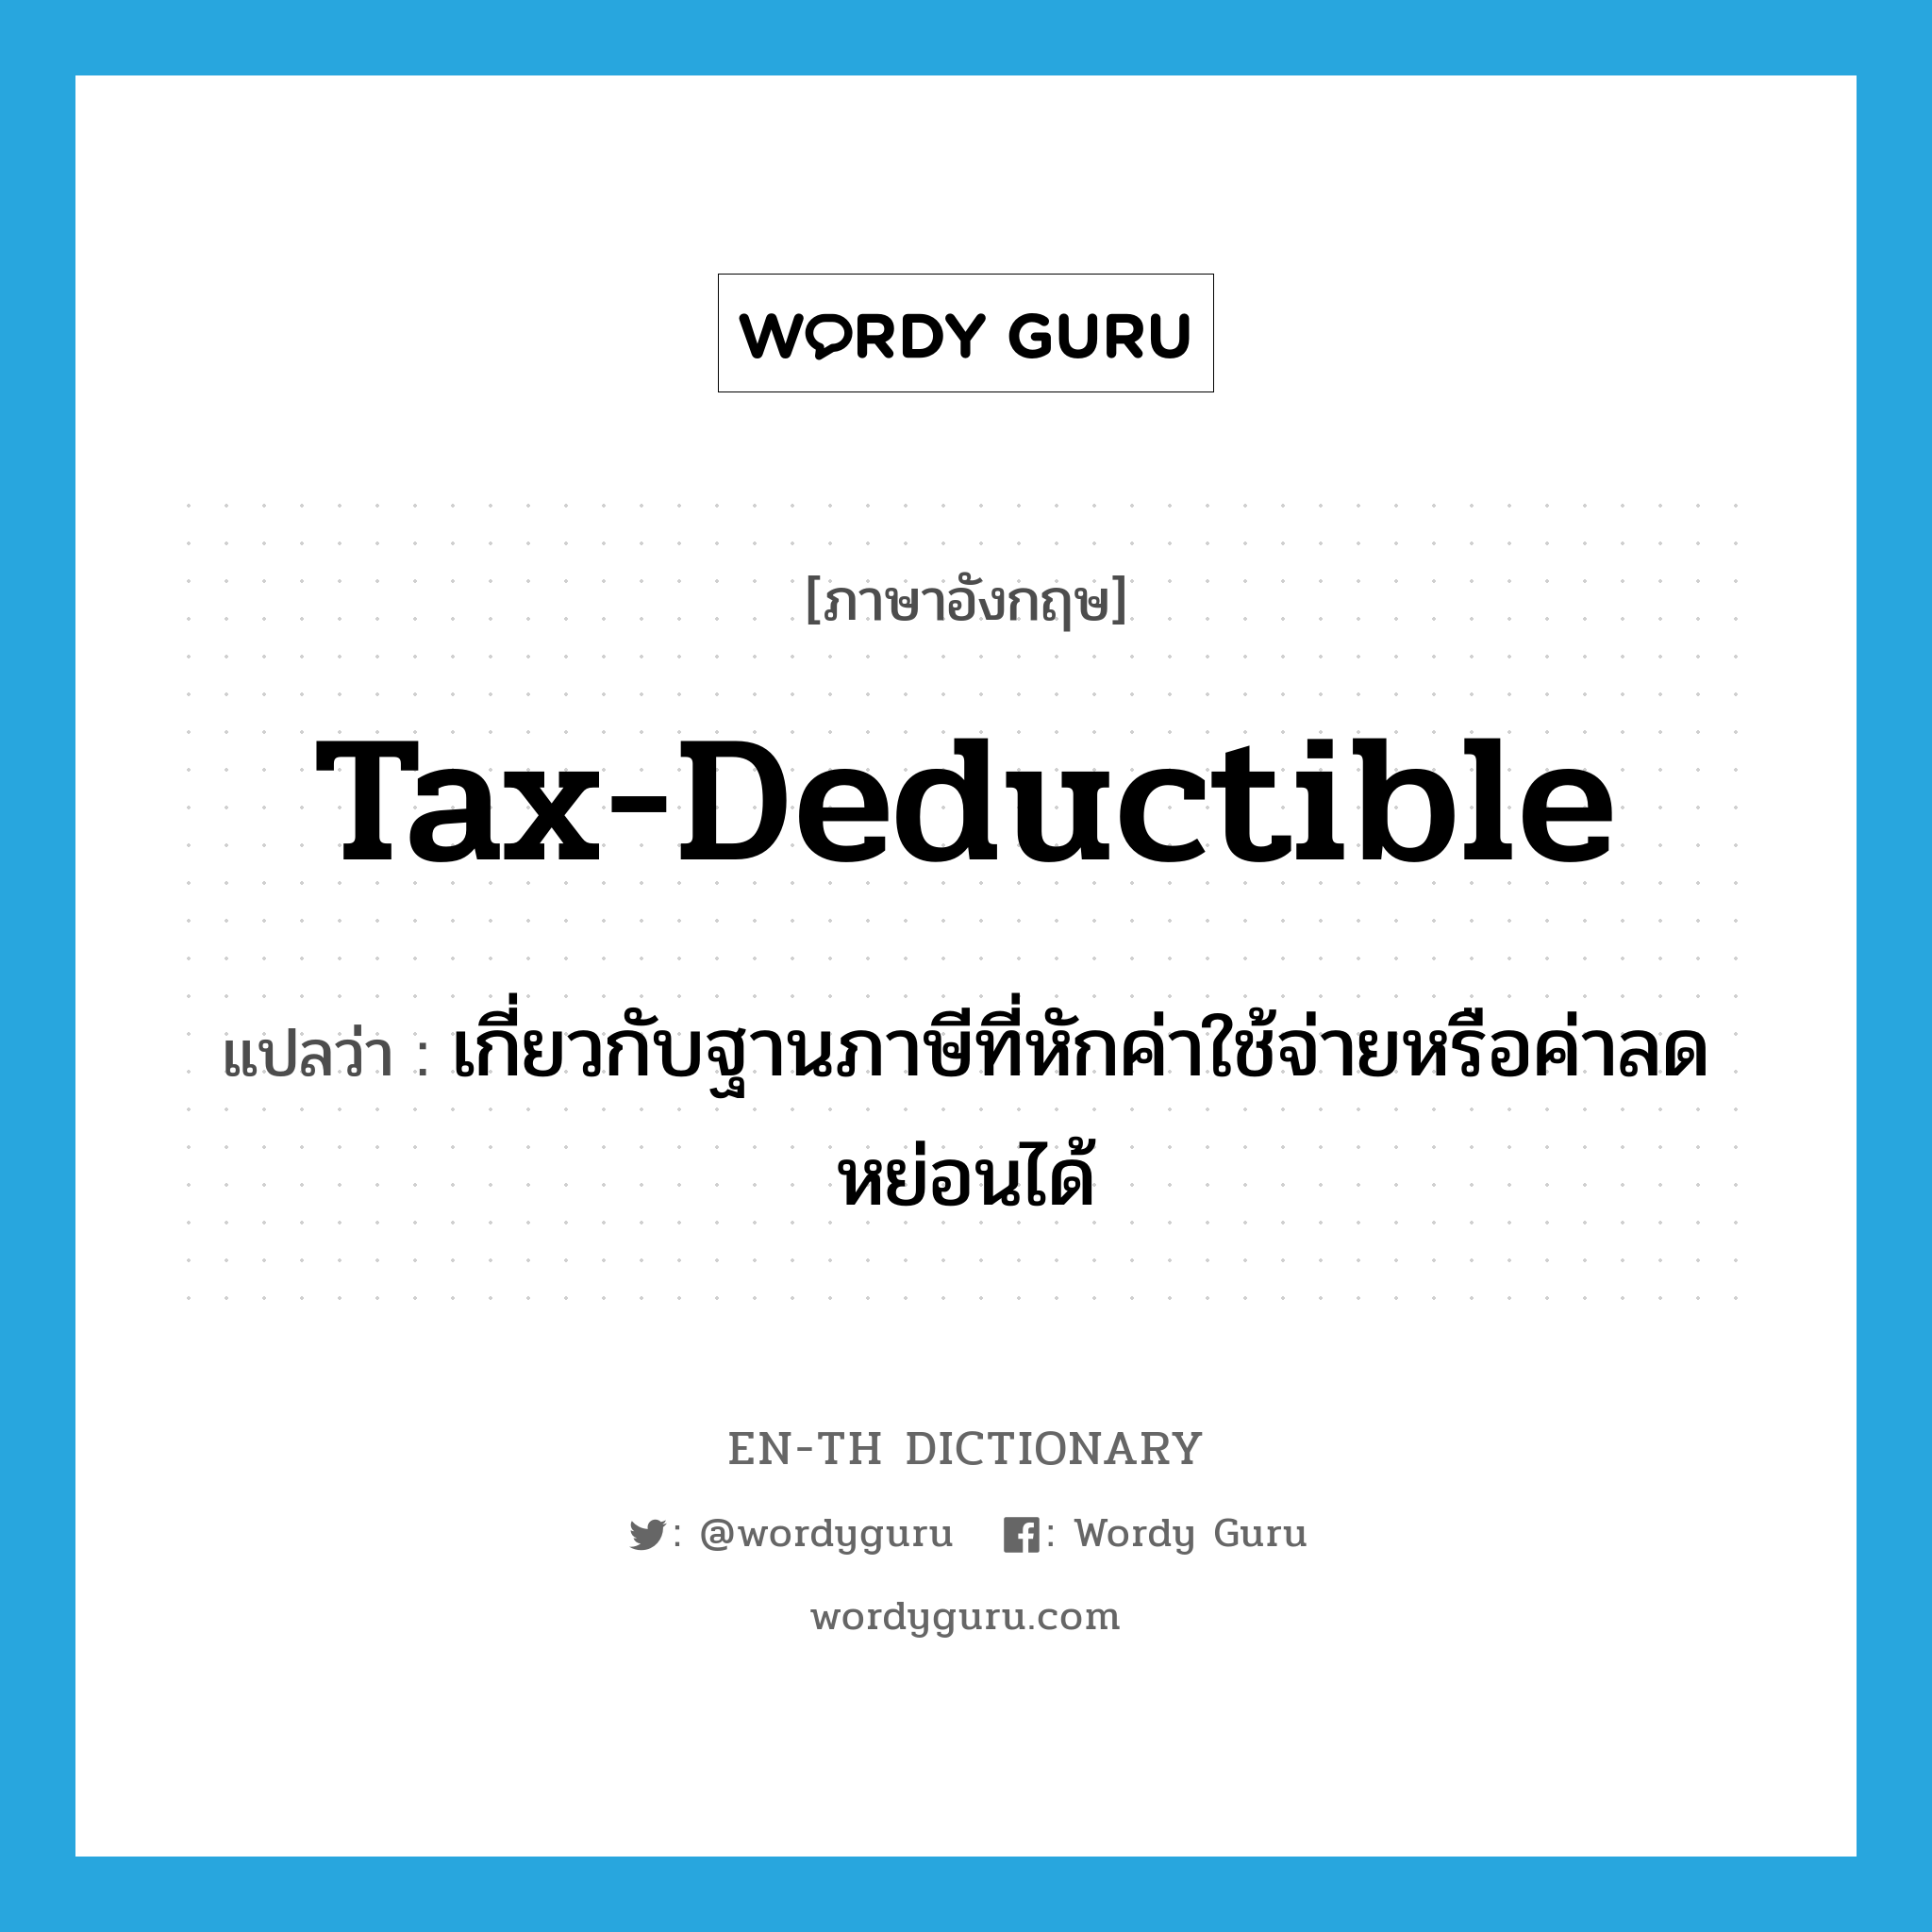 เกี่ยวกับฐานภาษีที่หักค่าใช้จ่ายหรือค่าลดหย่อนได้ ภาษาอังกฤษ?, คำศัพท์ภาษาอังกฤษ เกี่ยวกับฐานภาษีที่หักค่าใช้จ่ายหรือค่าลดหย่อนได้ แปลว่า tax-deductible ประเภท ADJ หมวด ADJ